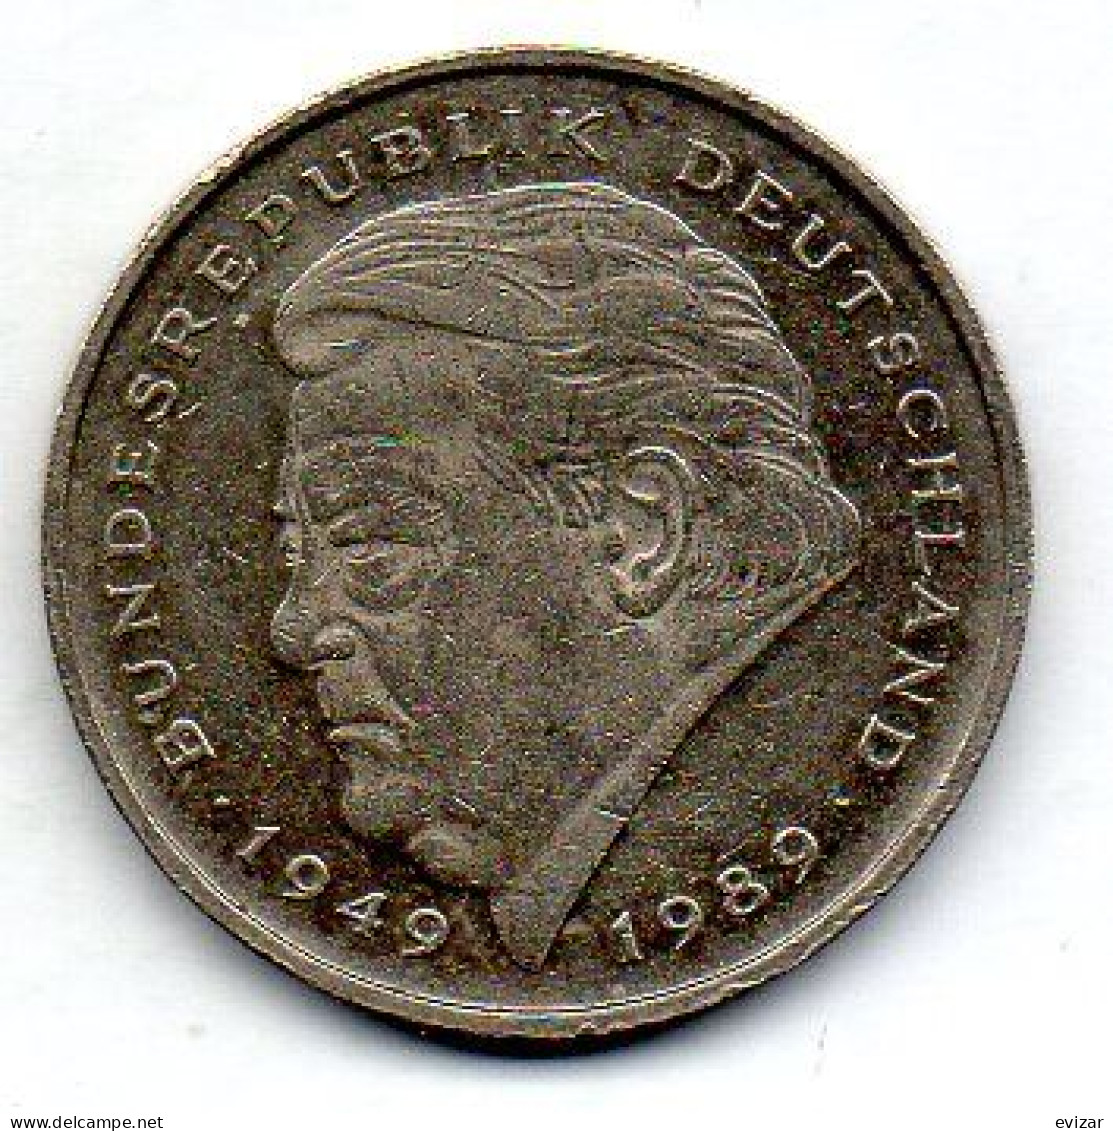 GERMANY - FEDERAL REPUBLIC, 2 Mark, Copper-Nickel, Year 1991-A, KM # 175 - 2 Marchi